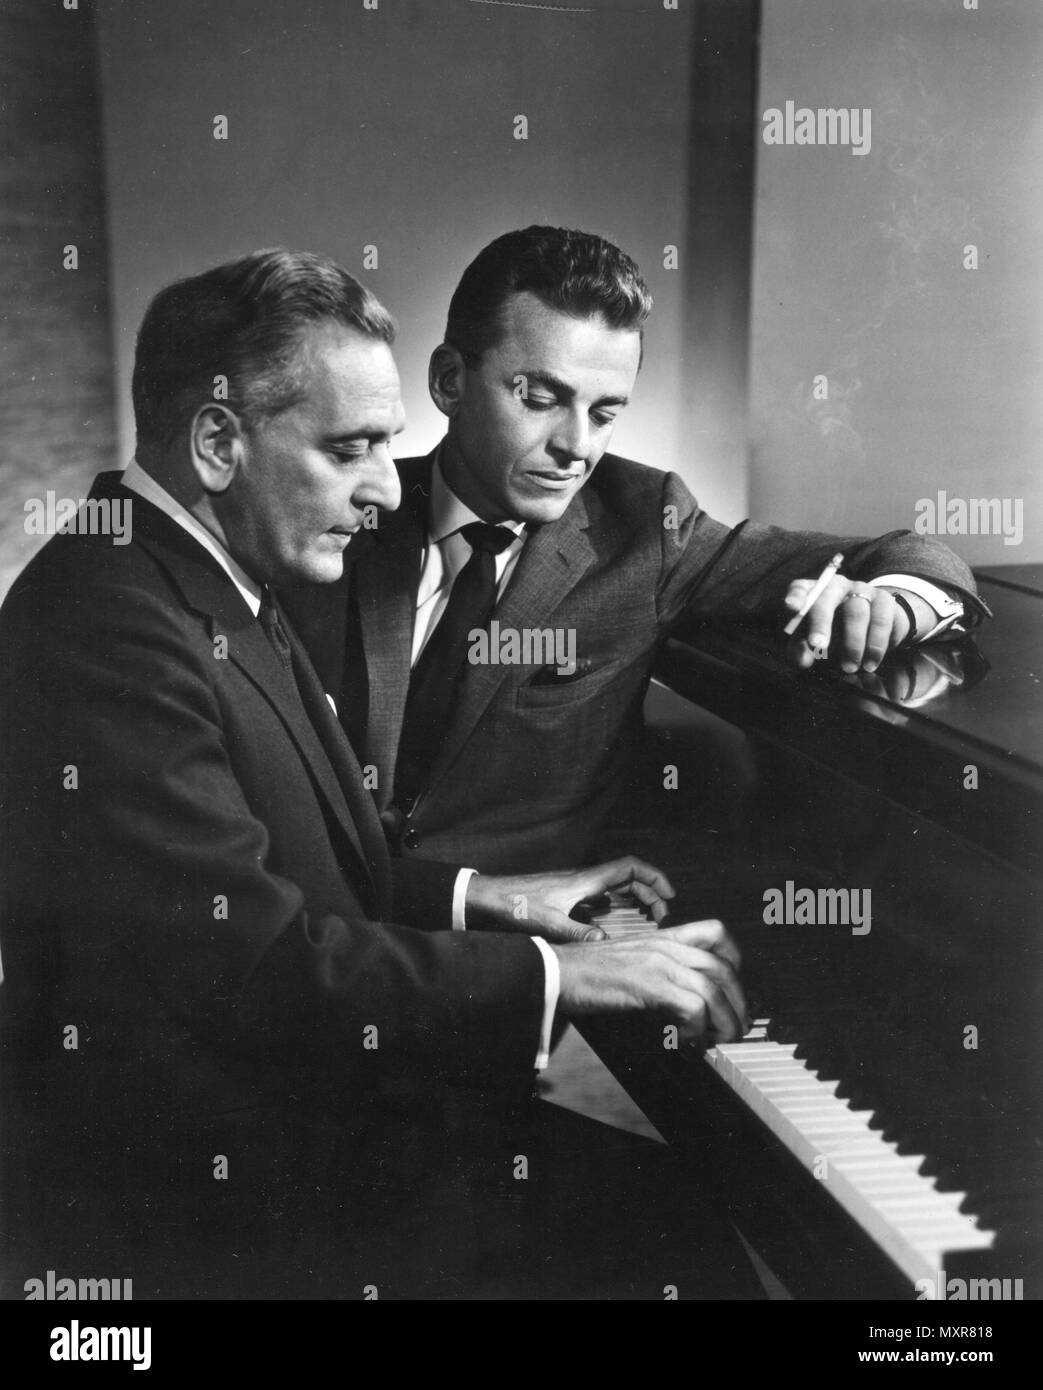 Alan Jay Lerner (mit Zigarette) und Frederick Loewe arbeiten zusammen am Klavier auf einem anderen Broadway Musical Score. Die beiden arbeiteten auf die Broadway Produktion "My Fair Lady." New York, New York, 1960. Stockfoto